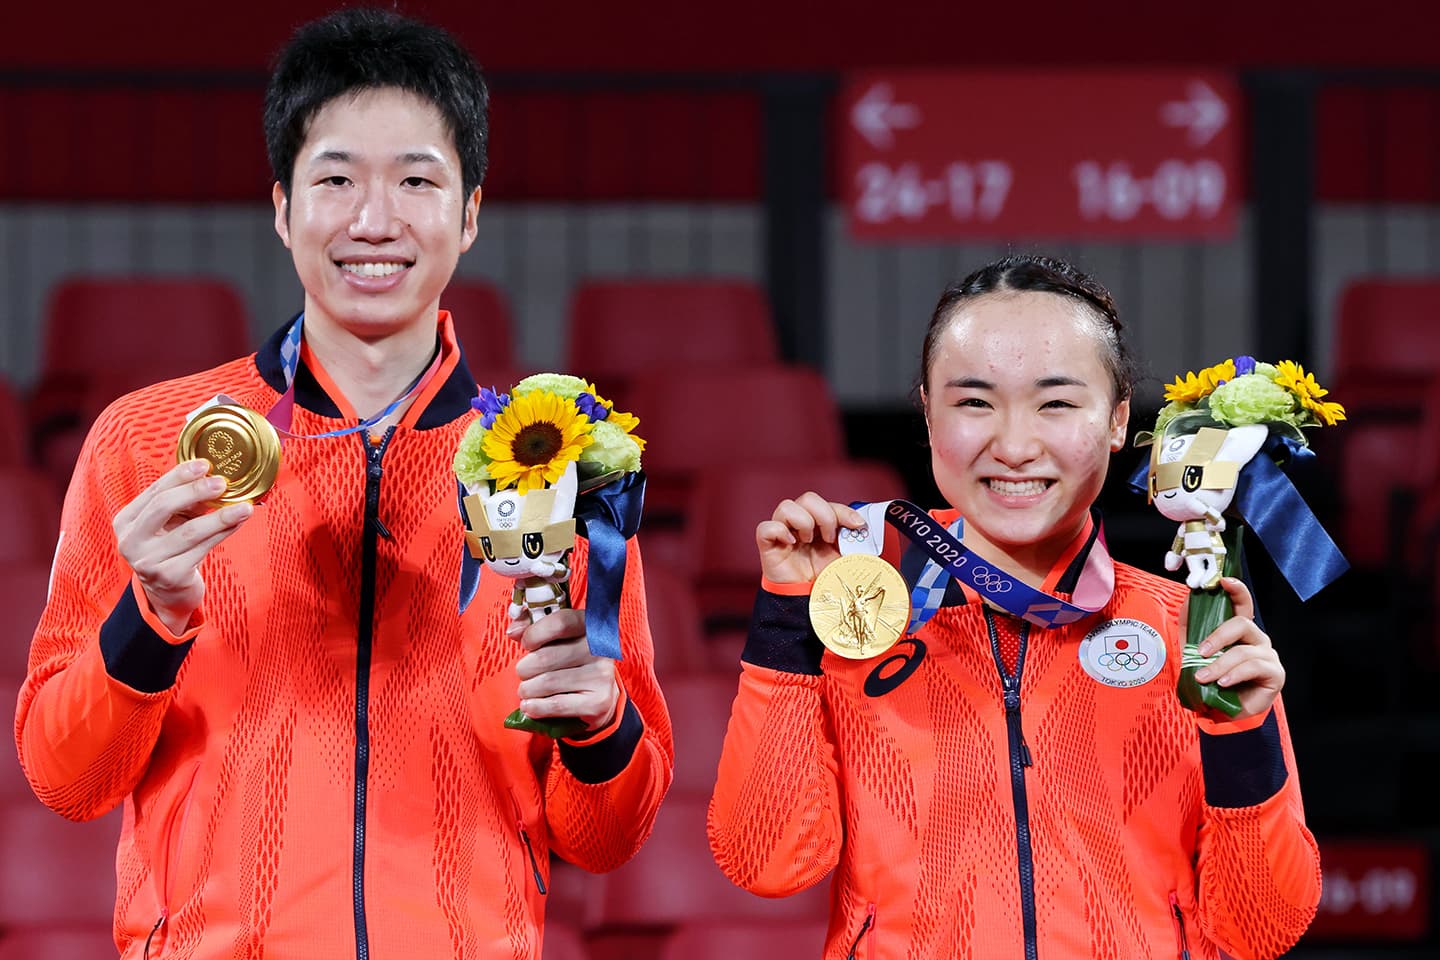 東京2020大会 混合ダブルスで金メダルを獲得した水谷隼選手と伊藤美誠選手のペア